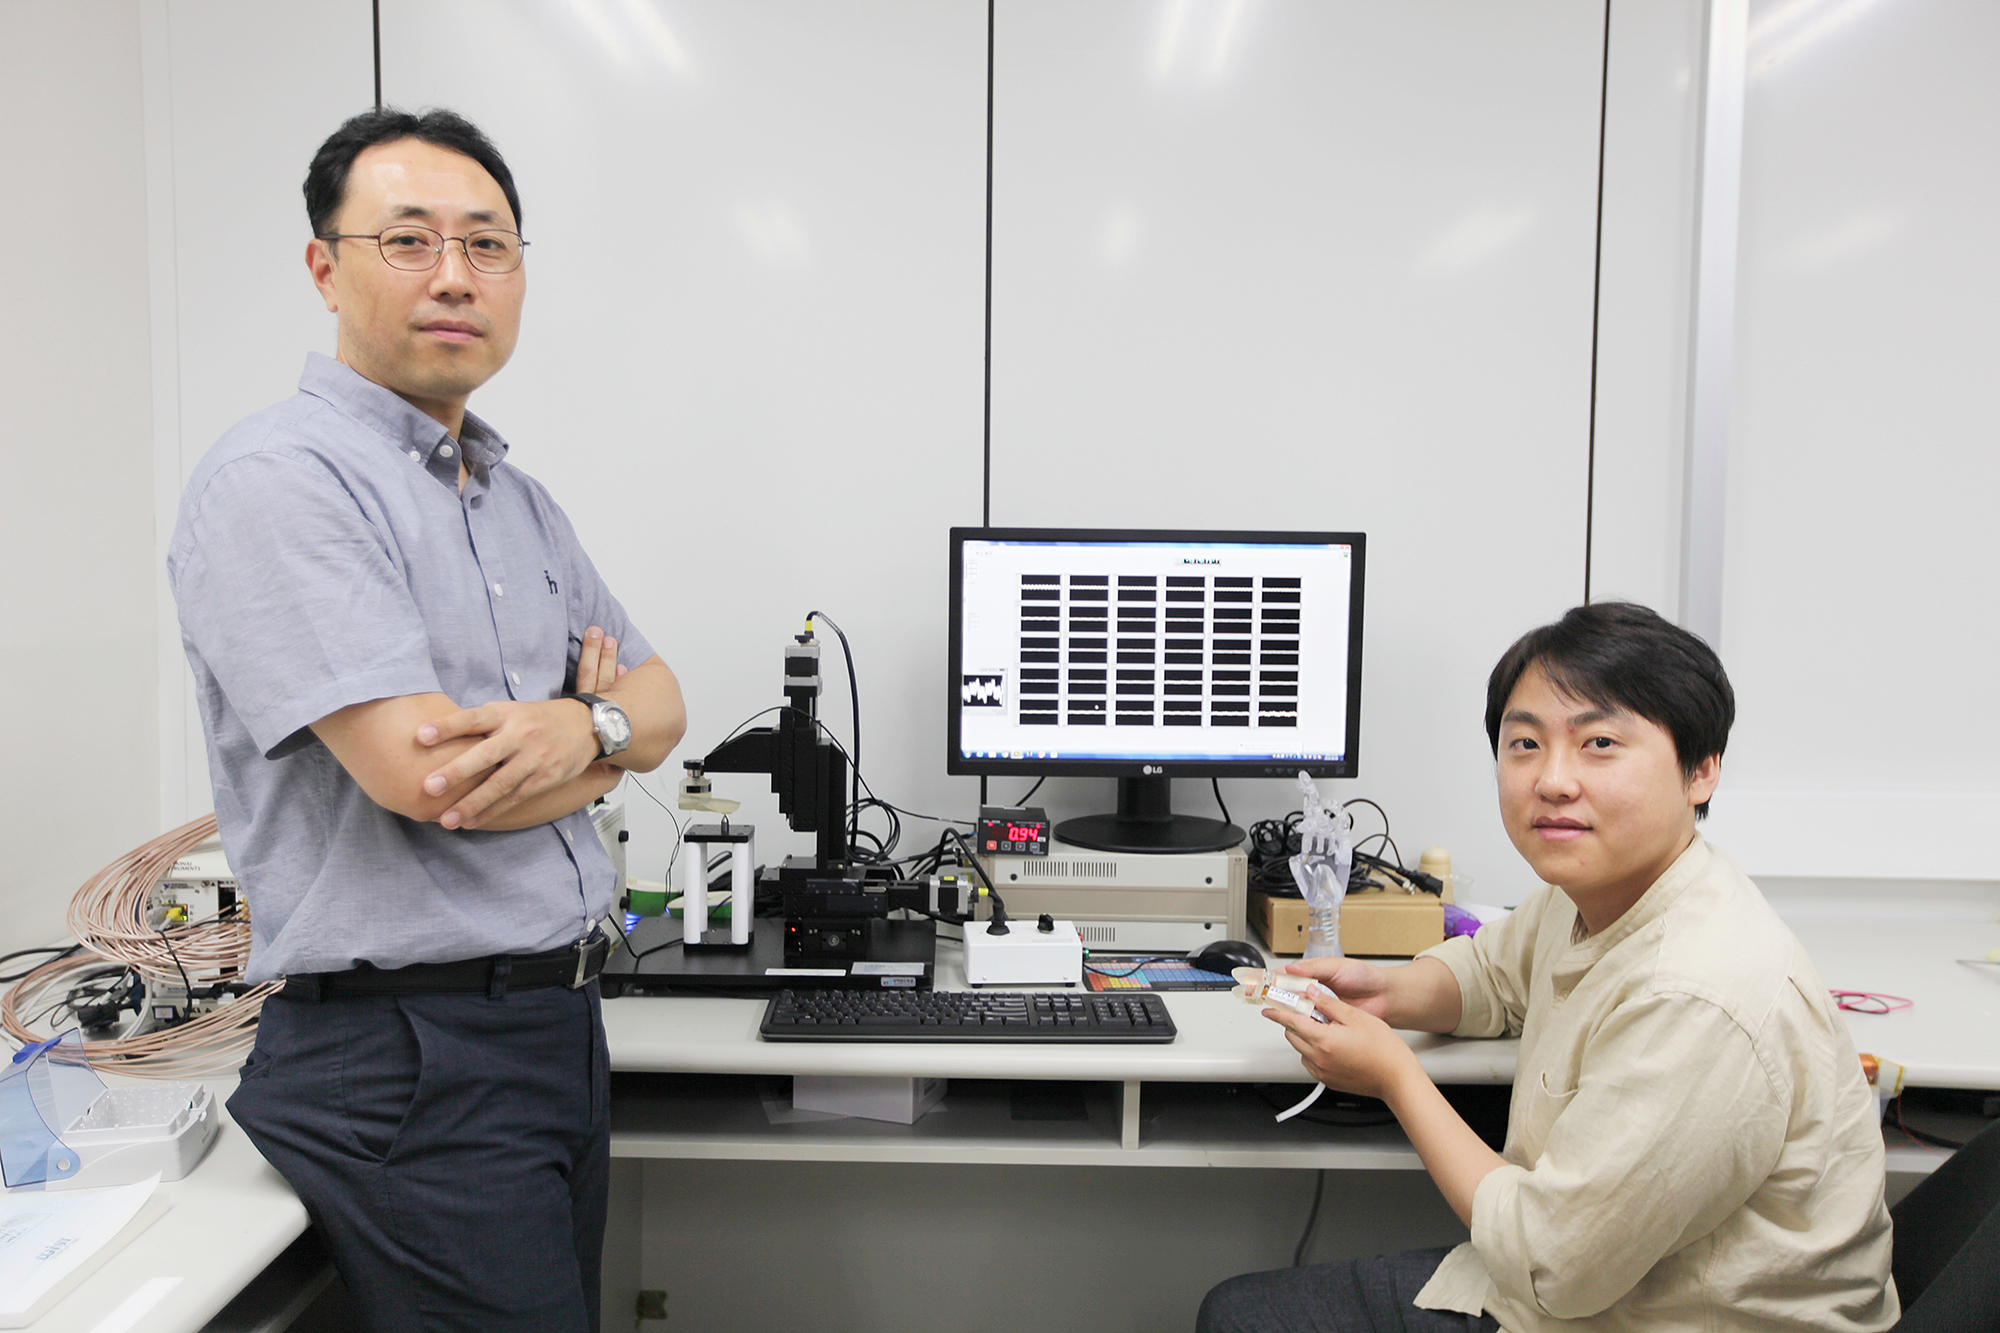 El profesor Jae Eun Jang (izquierda) y el estudiante del programa Minkyung Shim (derecha). Crédito: DGIST